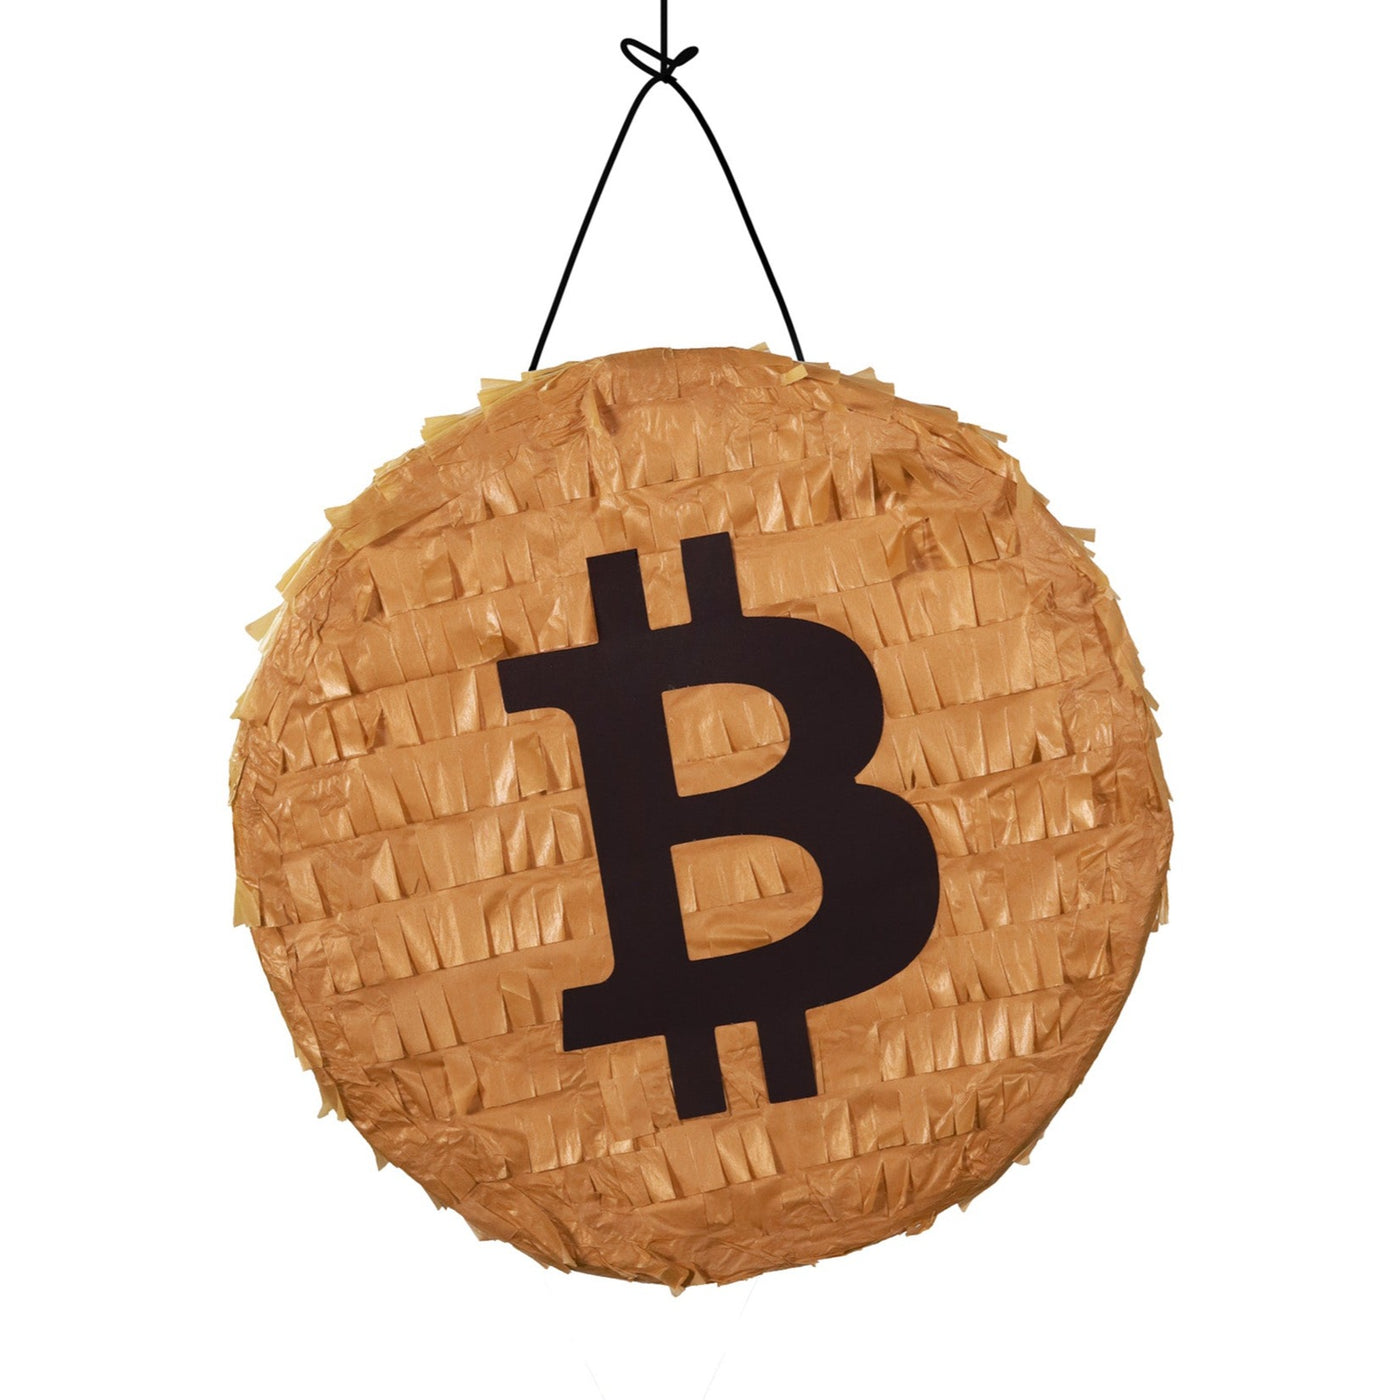 Bitcoin Pinata - Amazing Pinatas 